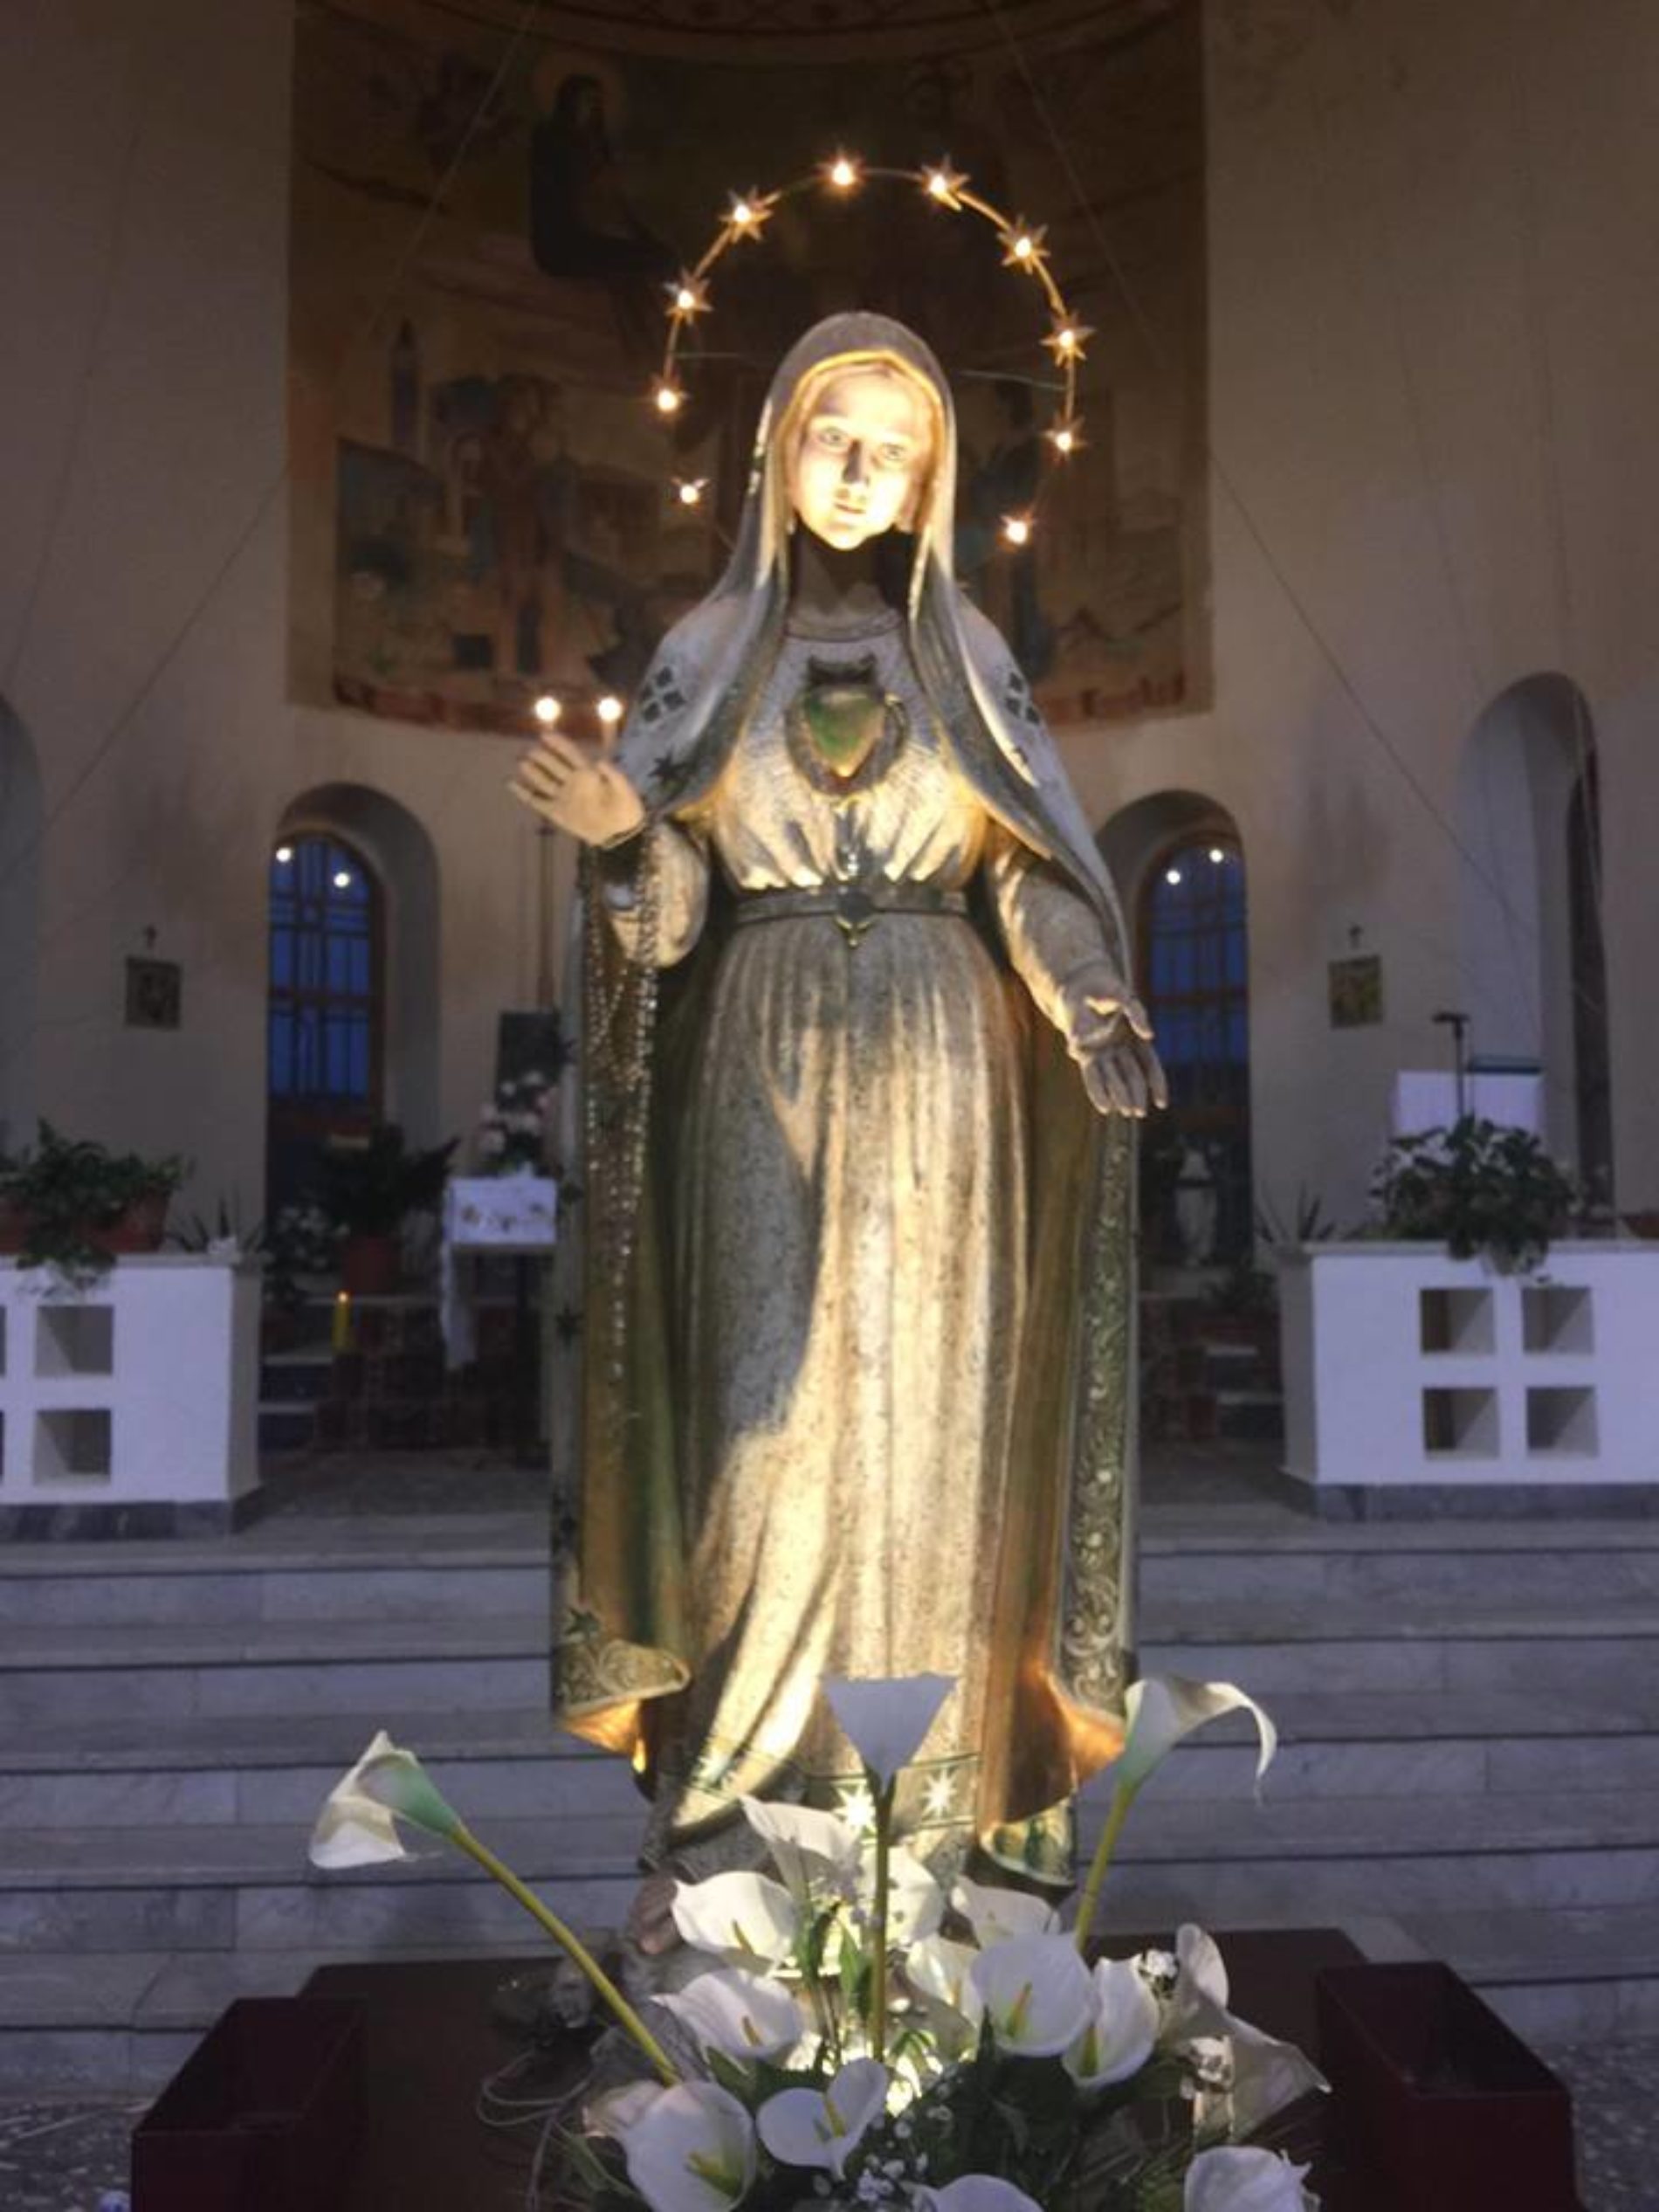 FESTA DI FINE ESTATE BORGO CASCINO- Processione Madonna di Fatima del Borgo Cascino